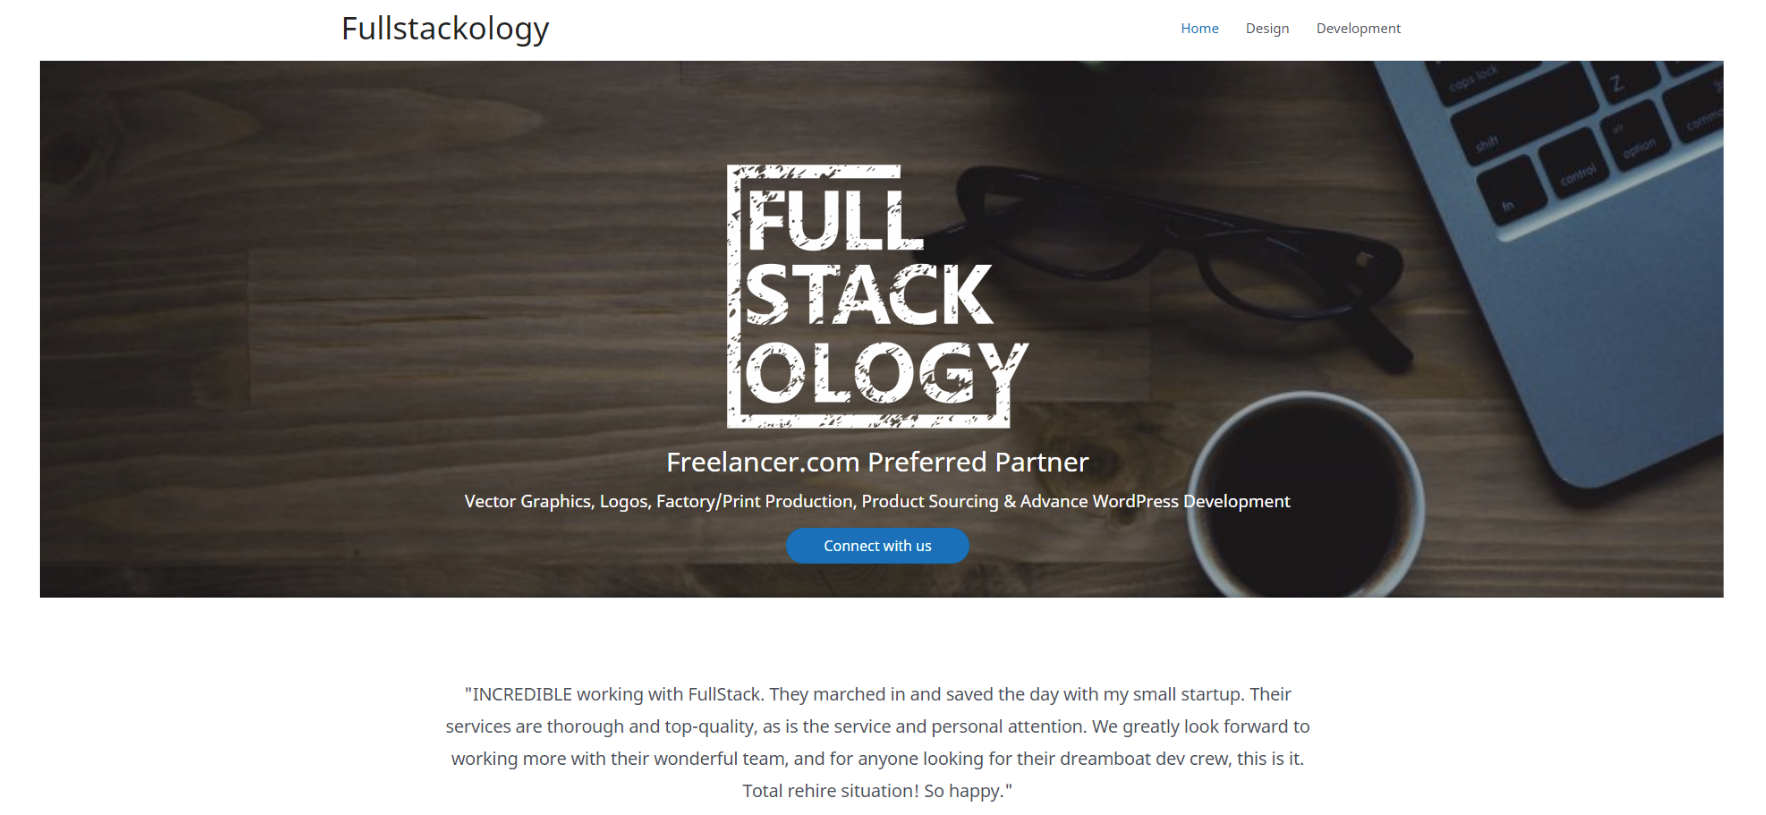 FullStackology website homepage